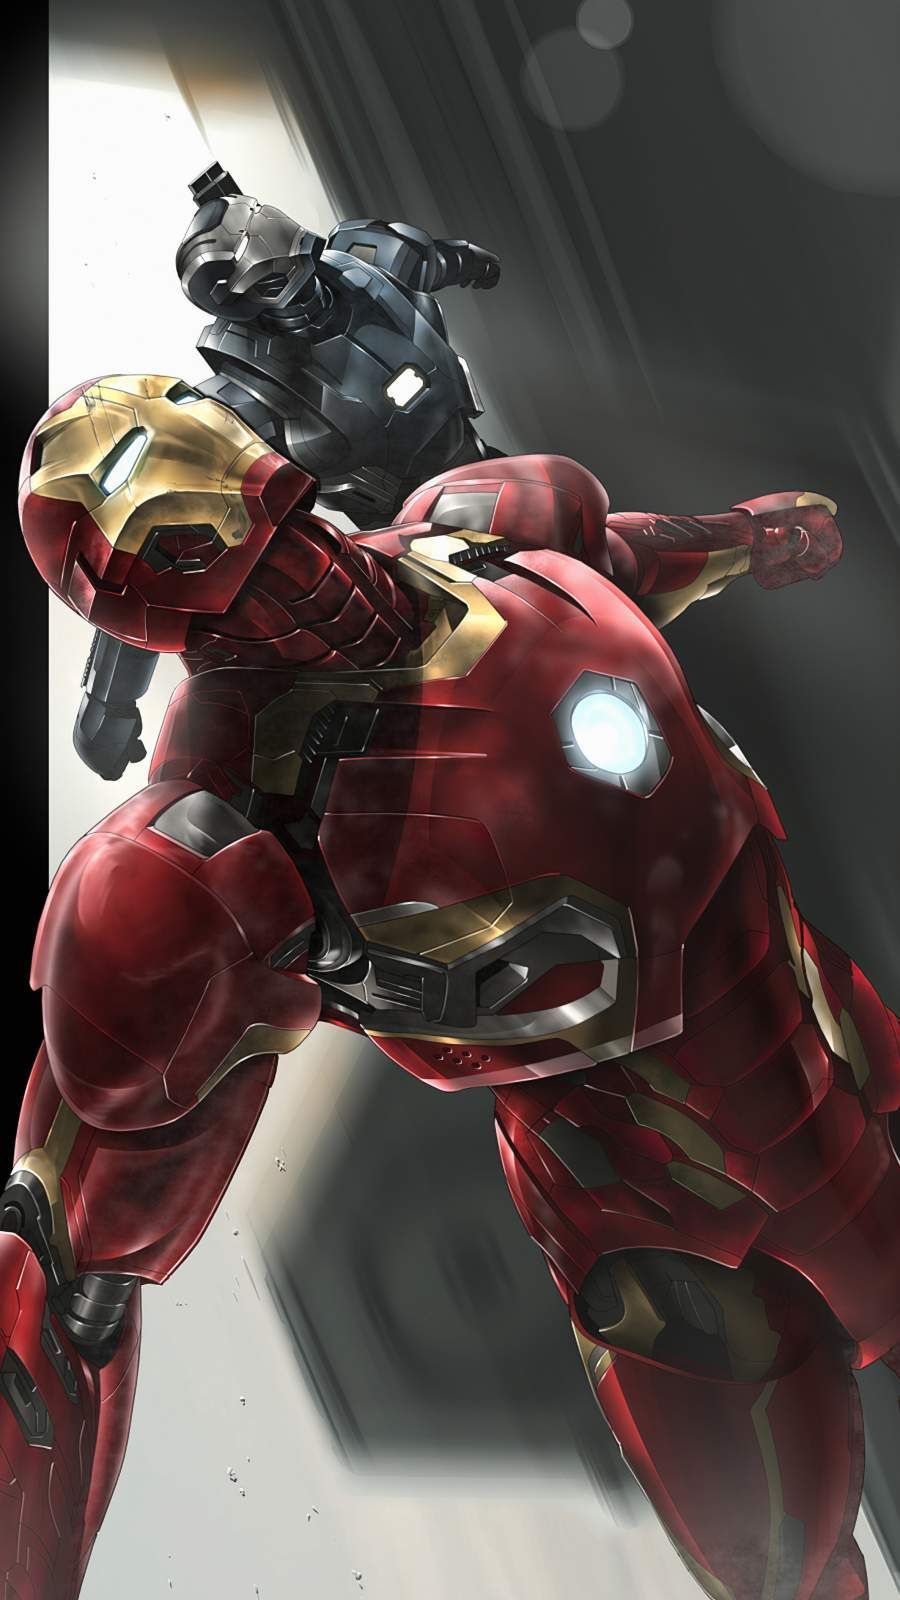 Iron Man War Machine Art iPhone Wallpaper Wallpaper, iPhone Wallpaper. Iron man, Marvel superhero posters, Iron man avengers